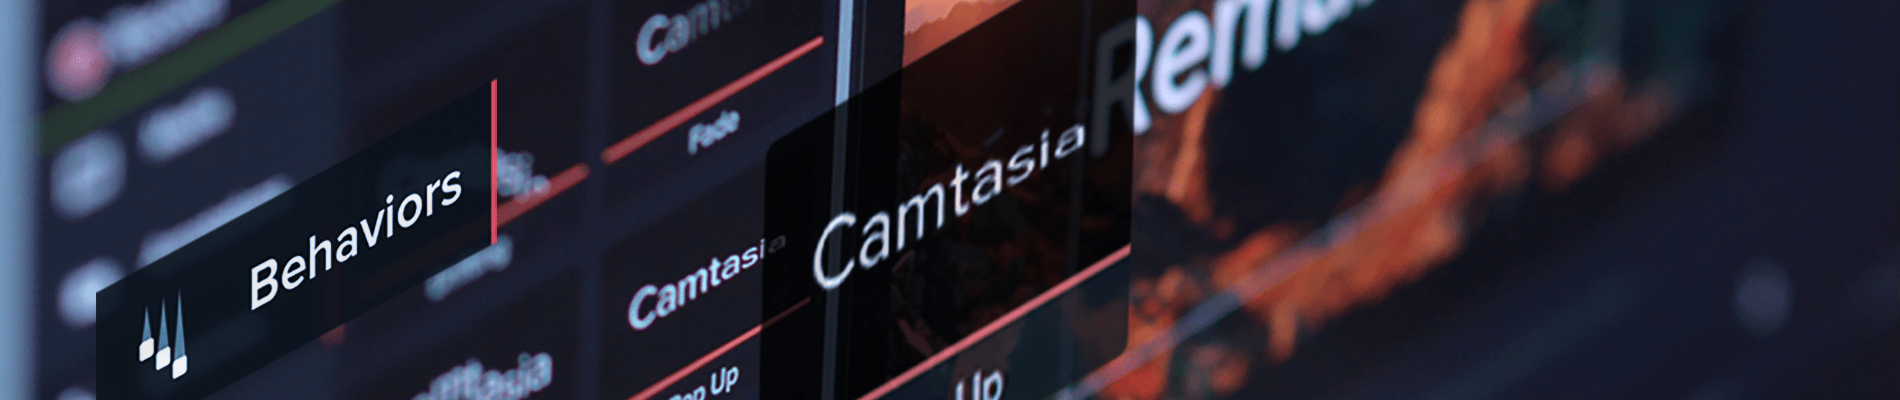 camtasia 9 keeps cracking